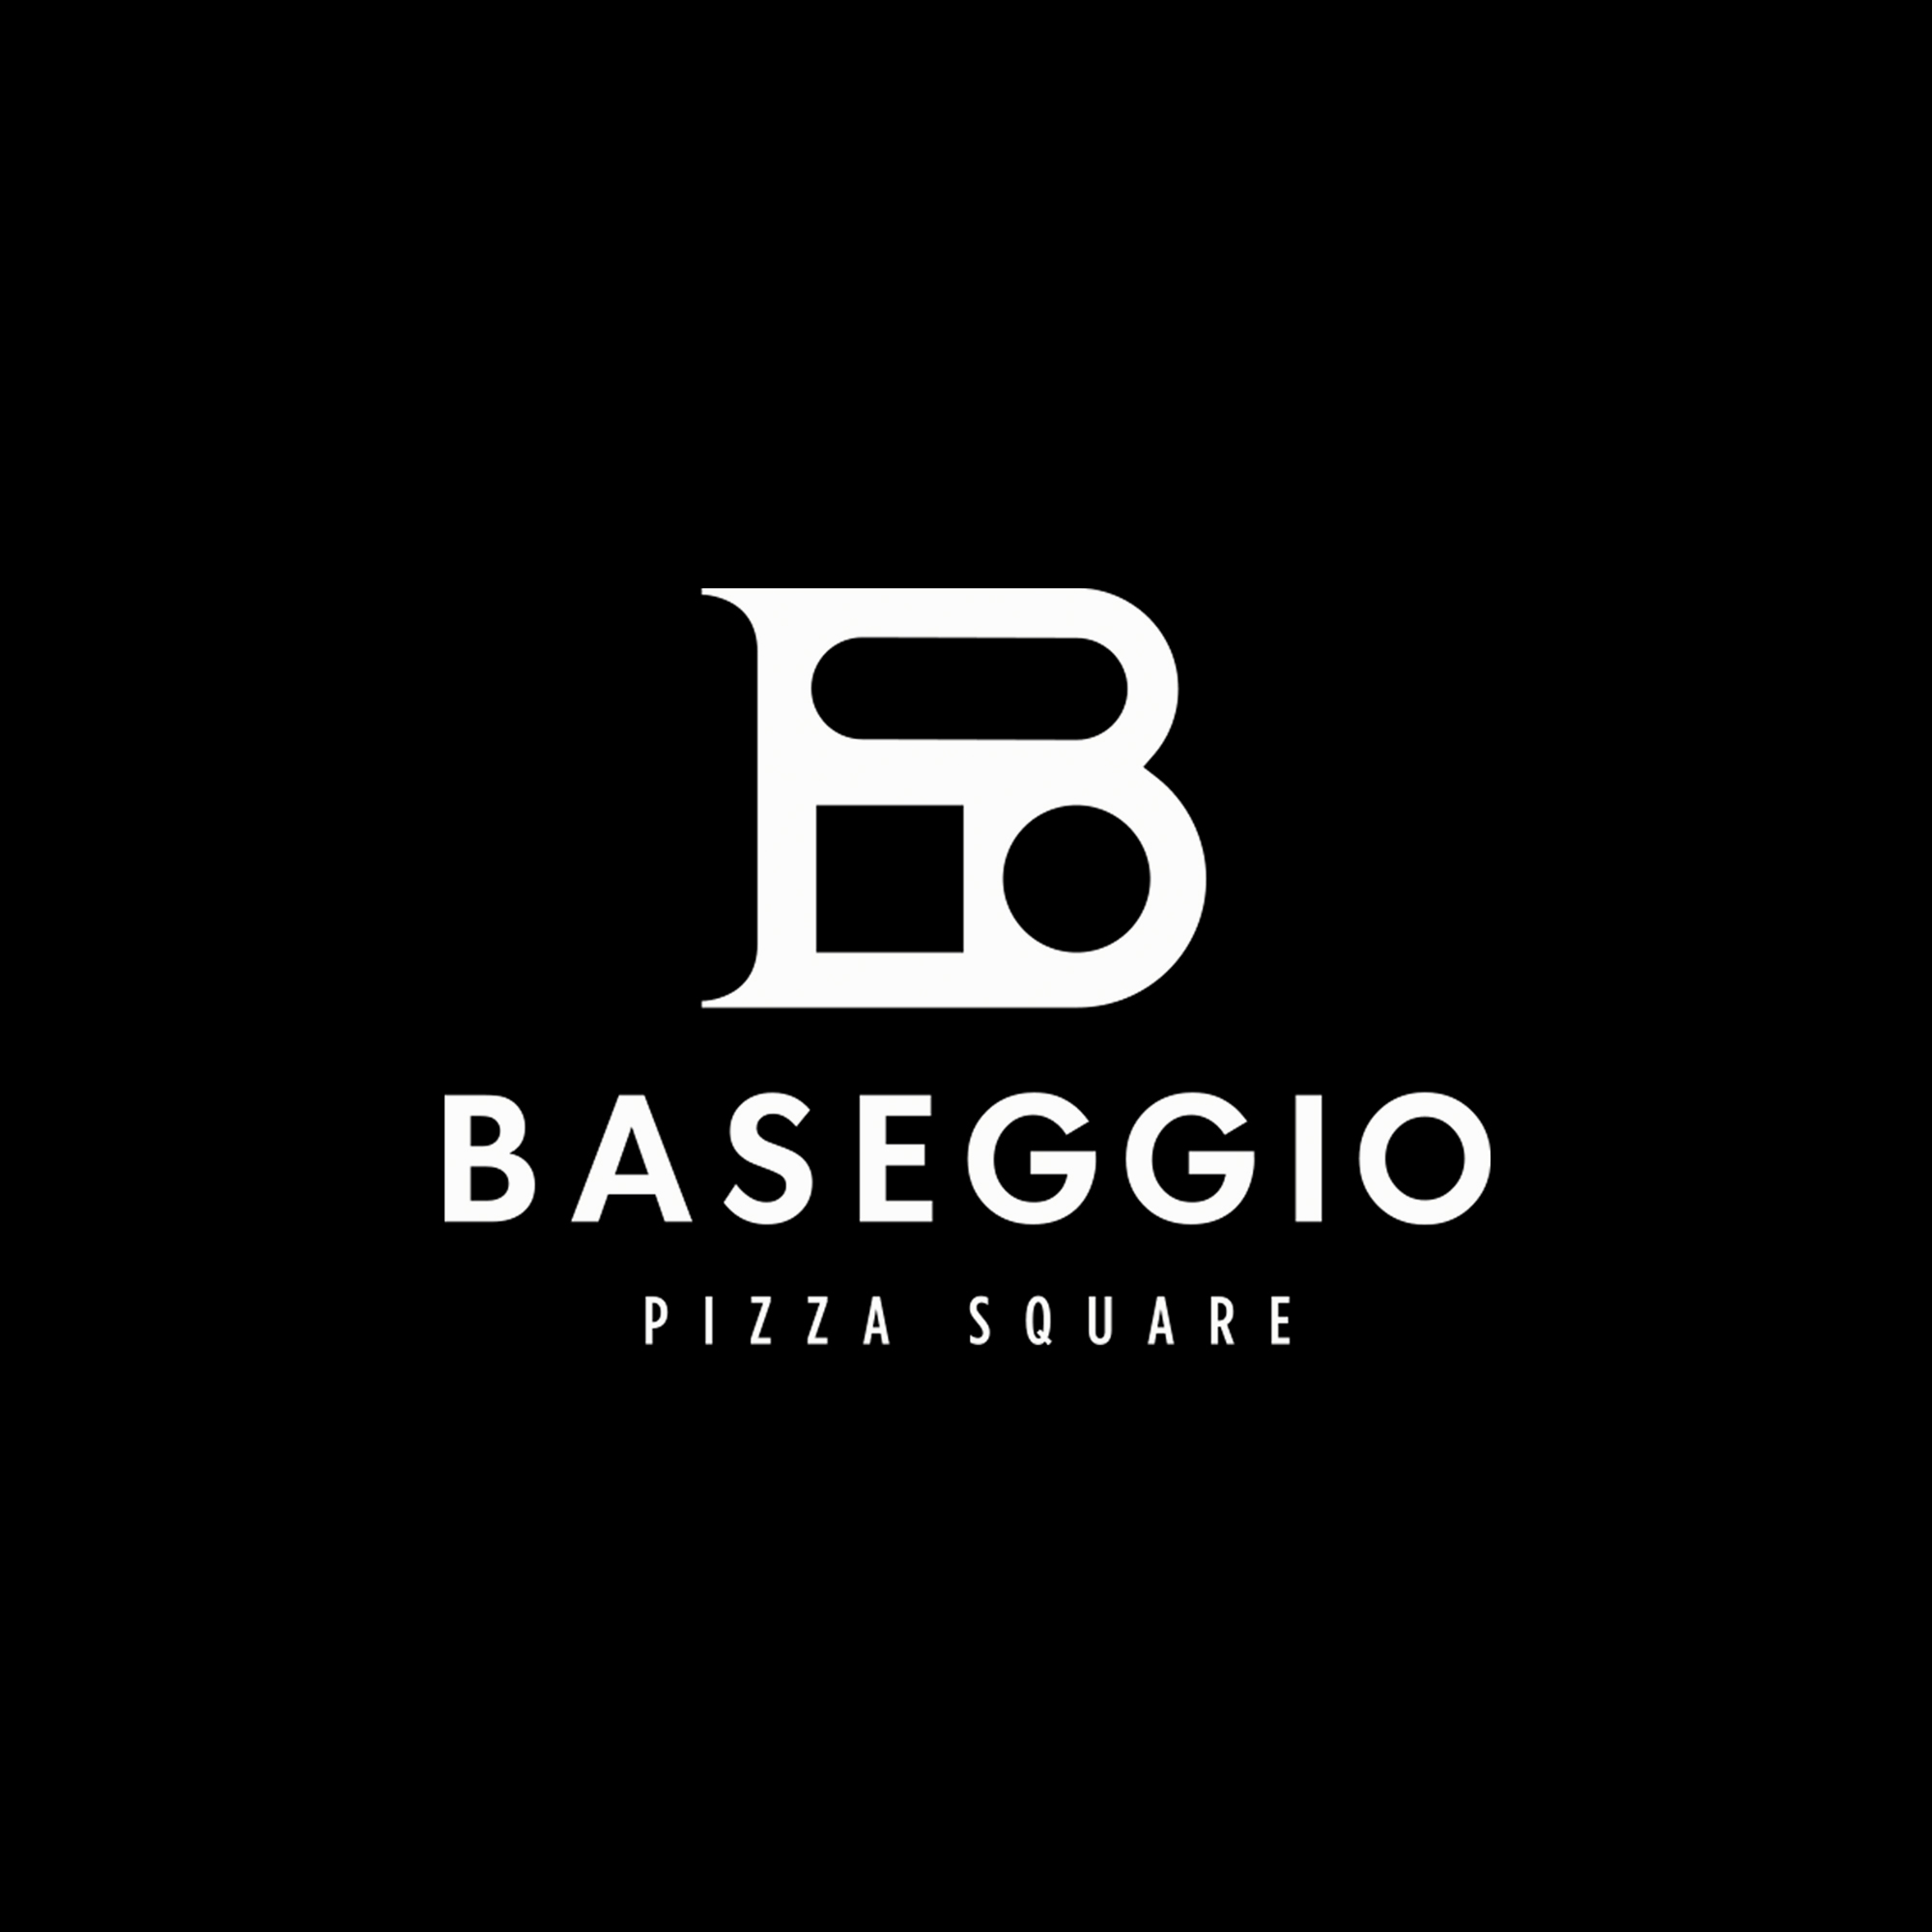 Student Concept for Baseggio Pizza Square by Alberto Redko Perera